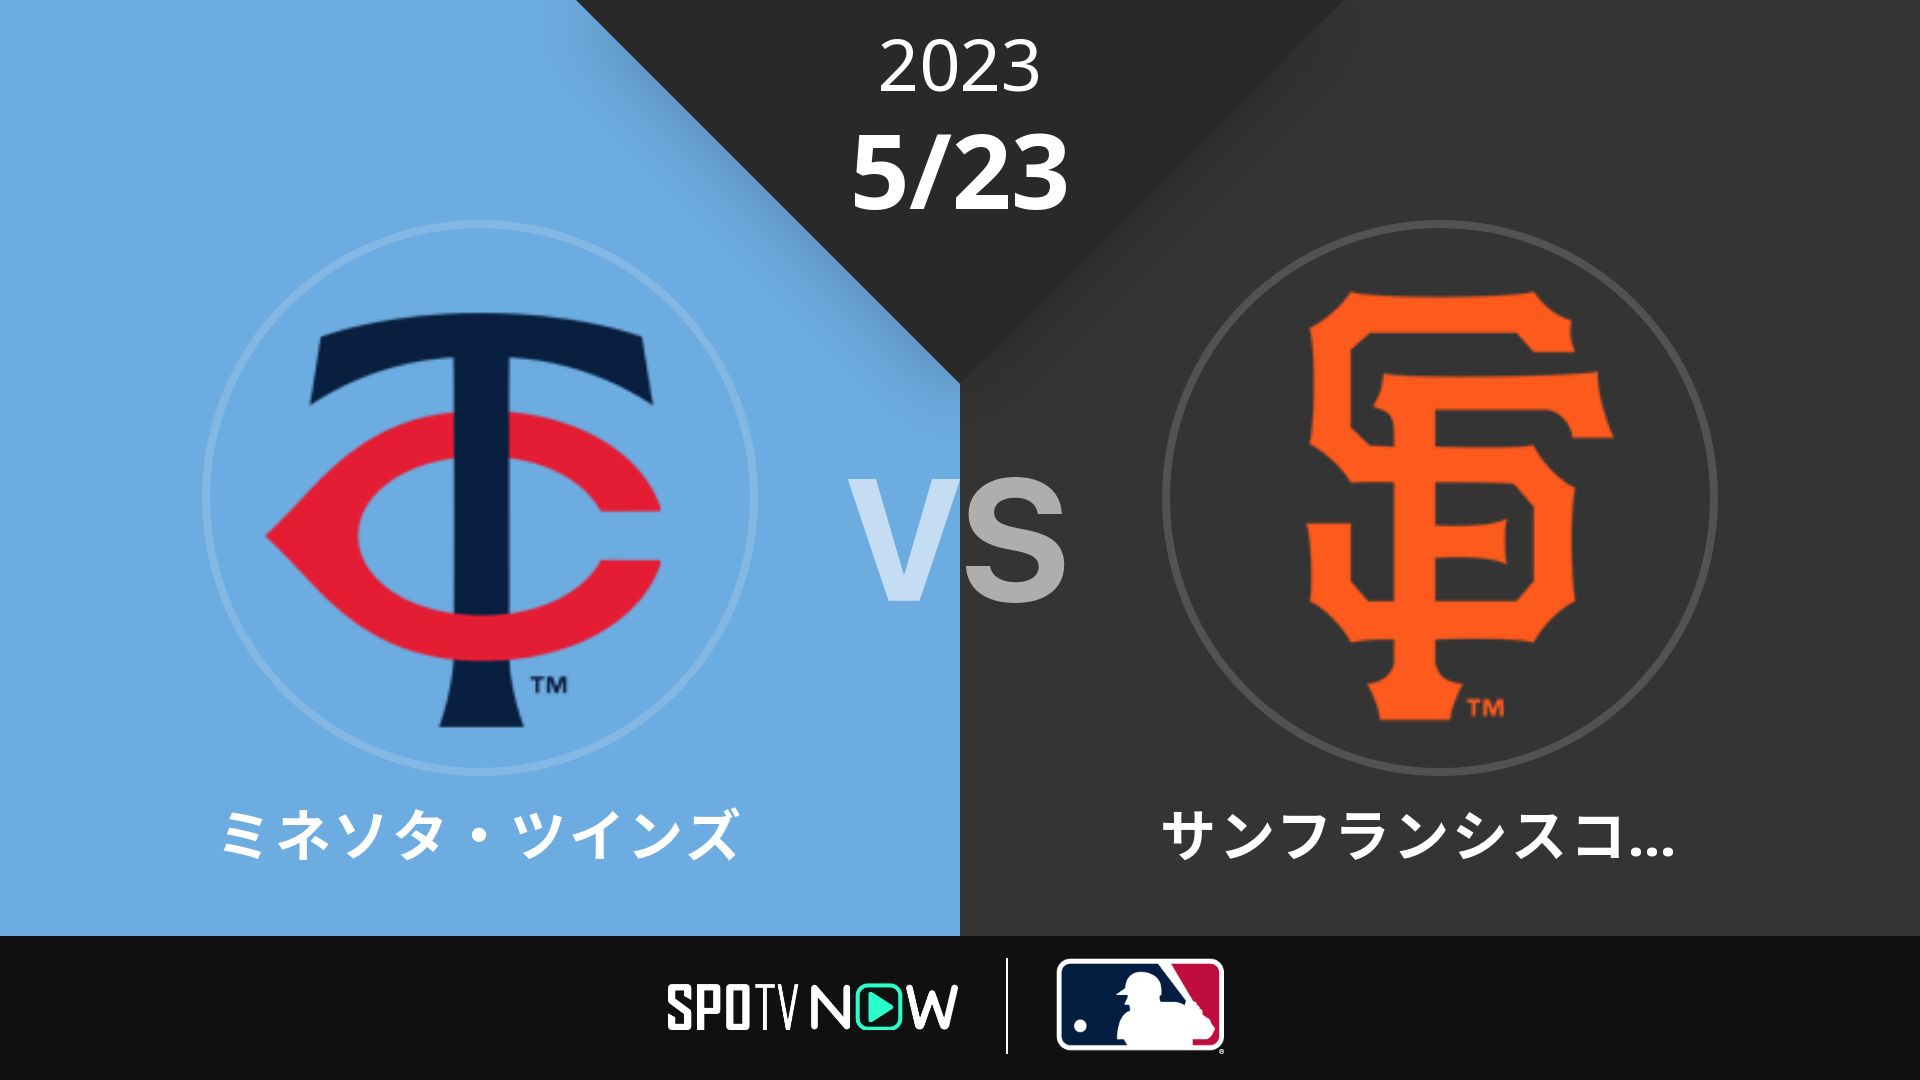 2023/5/23 ツインズ vs ジャイアンツ [MLB]